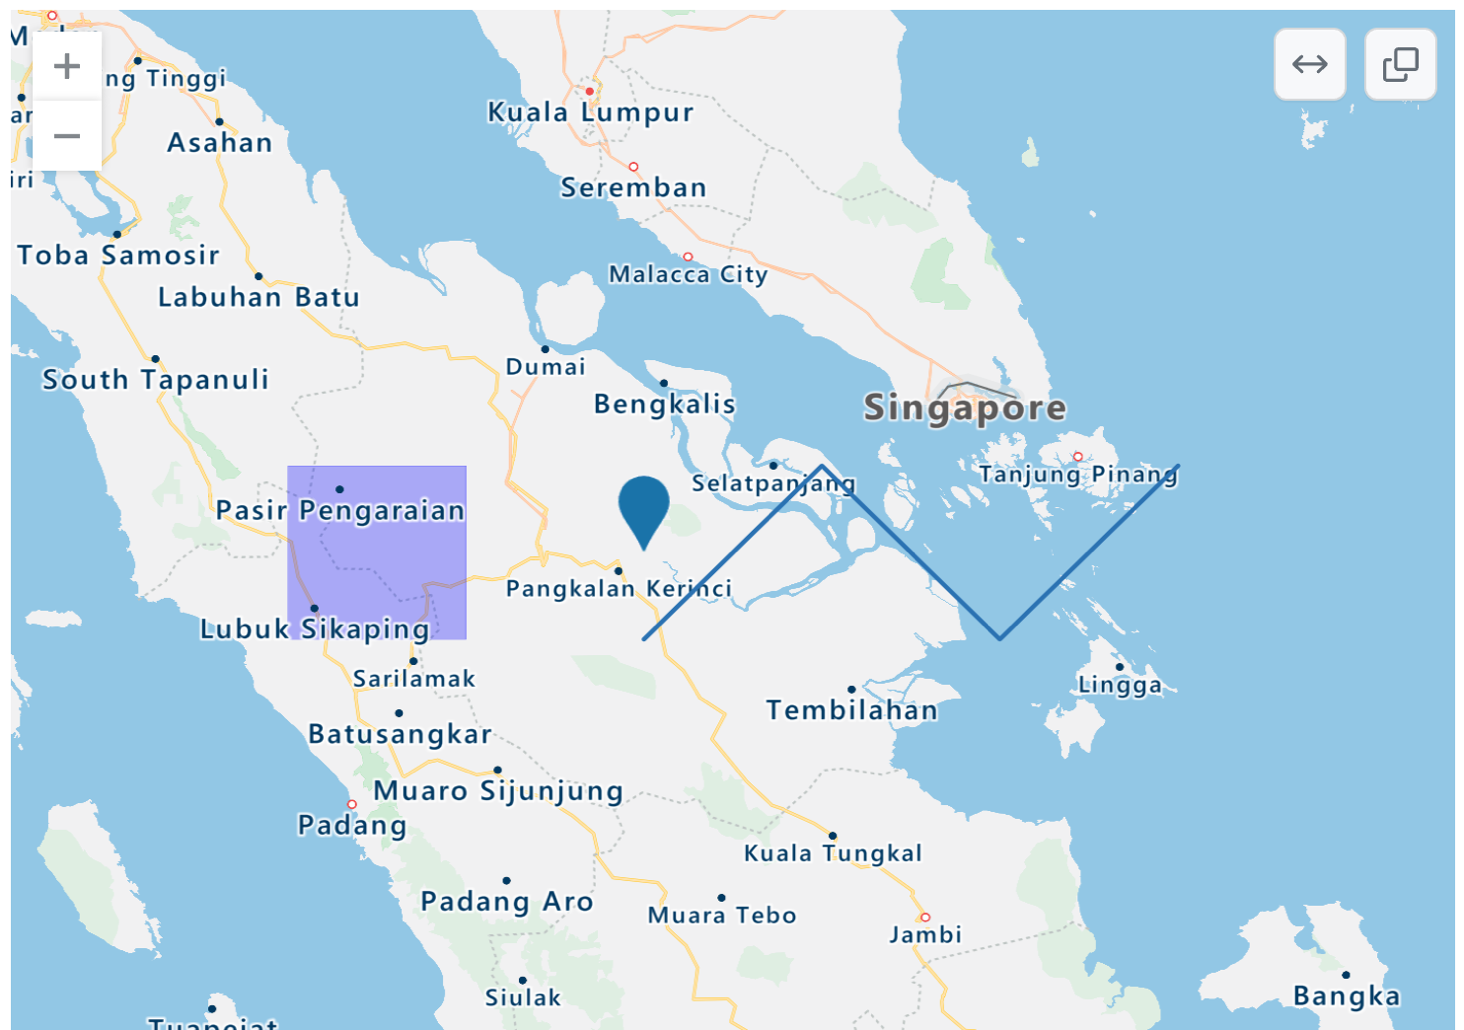 파란색 점, 보라색 사각형 오버레이 및 파란색 지그재그 선이 있는 인도네시아 서부와 싱가포르 및 말레이시아 일부의 렌더링된 TopoJSON 맵 스크린샷